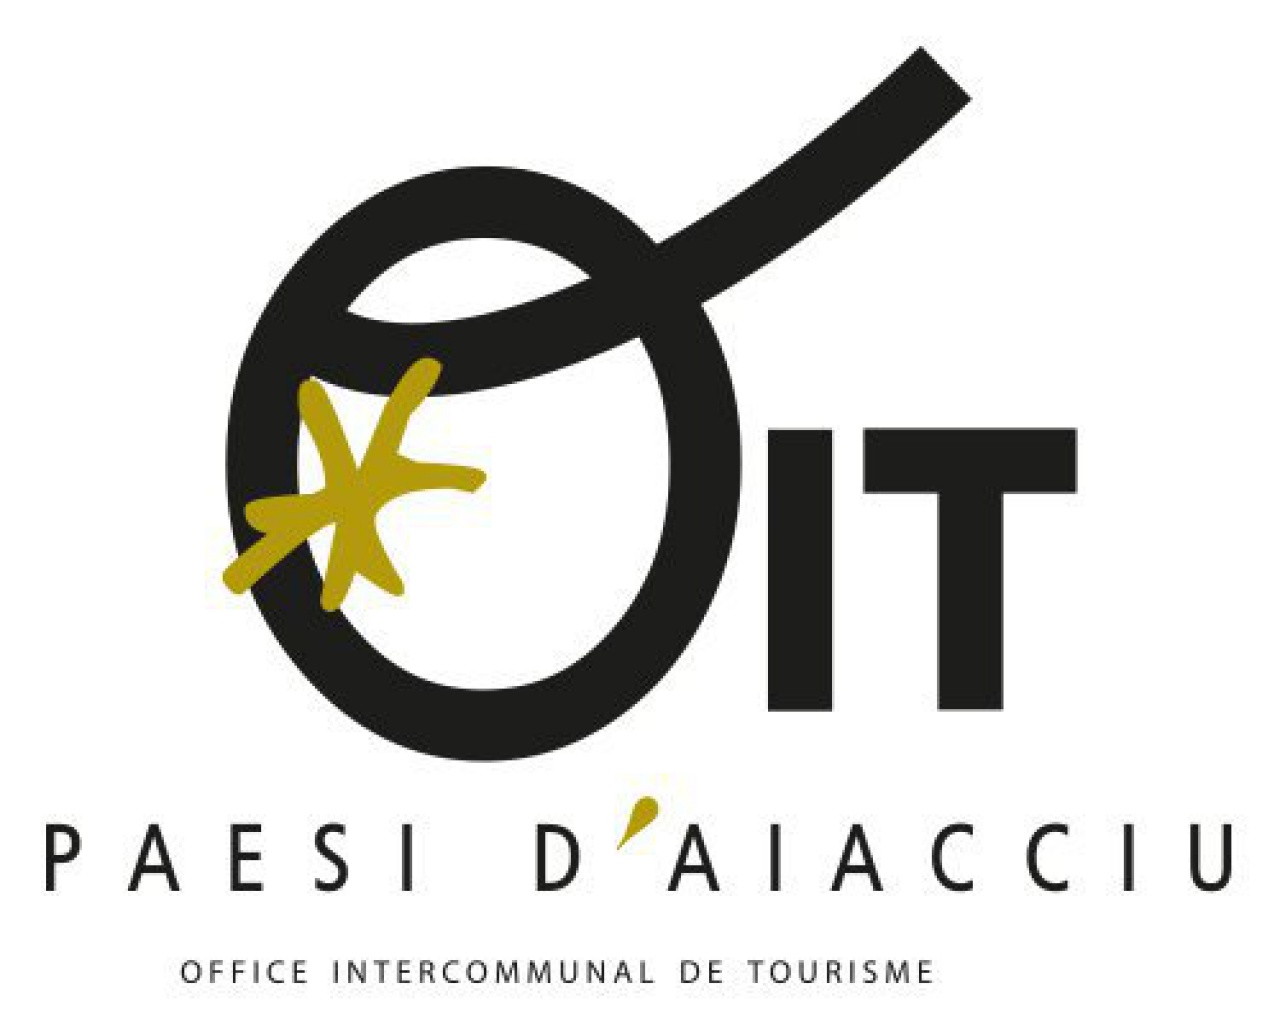 Office Intercommunal de Tourisme Paesi d'Aiacciu